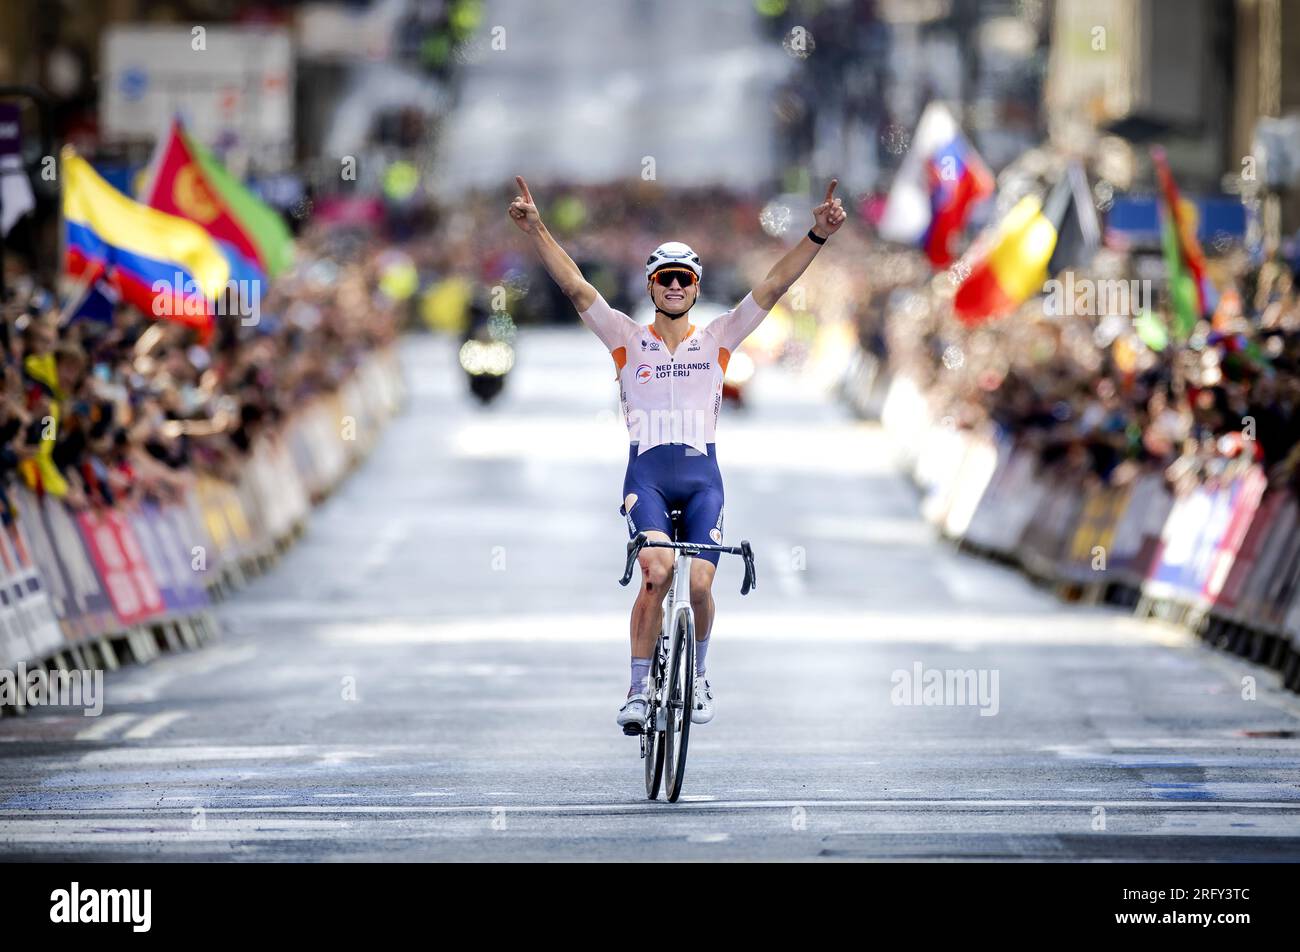 GLASGOW - Mathieu van der Poel celebra il suo titolo mondiale dopo aver vinto la gara su strada ai Campionati del mondo di ciclismo. Van der Poel è il primo campione del mondo olandese tra i professionisti dopo Joop Zoetemelk. ANP ROBIN VAN LONKHUIJSEN Foto Stock